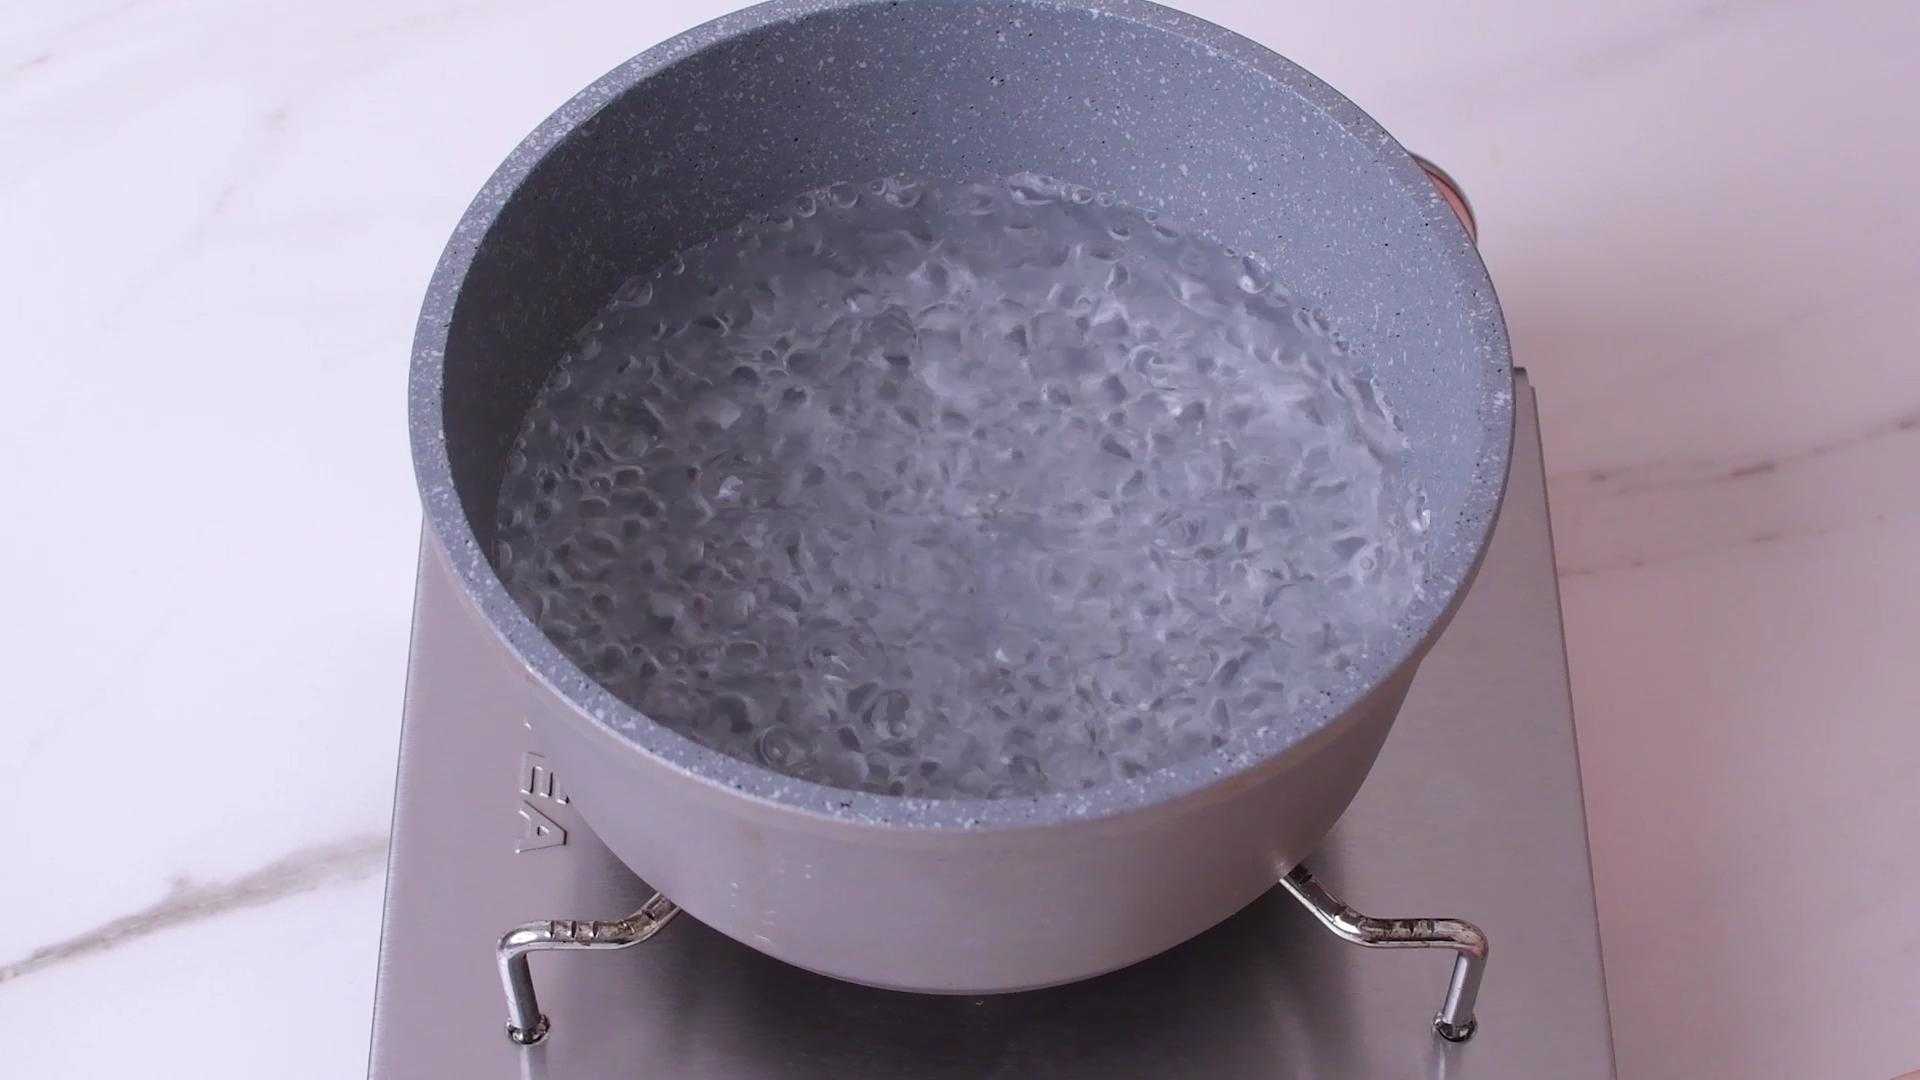 Calentar agua en una olla hasta llegar a hervir, luego bajar el fuego al mínimo o apagarlo.